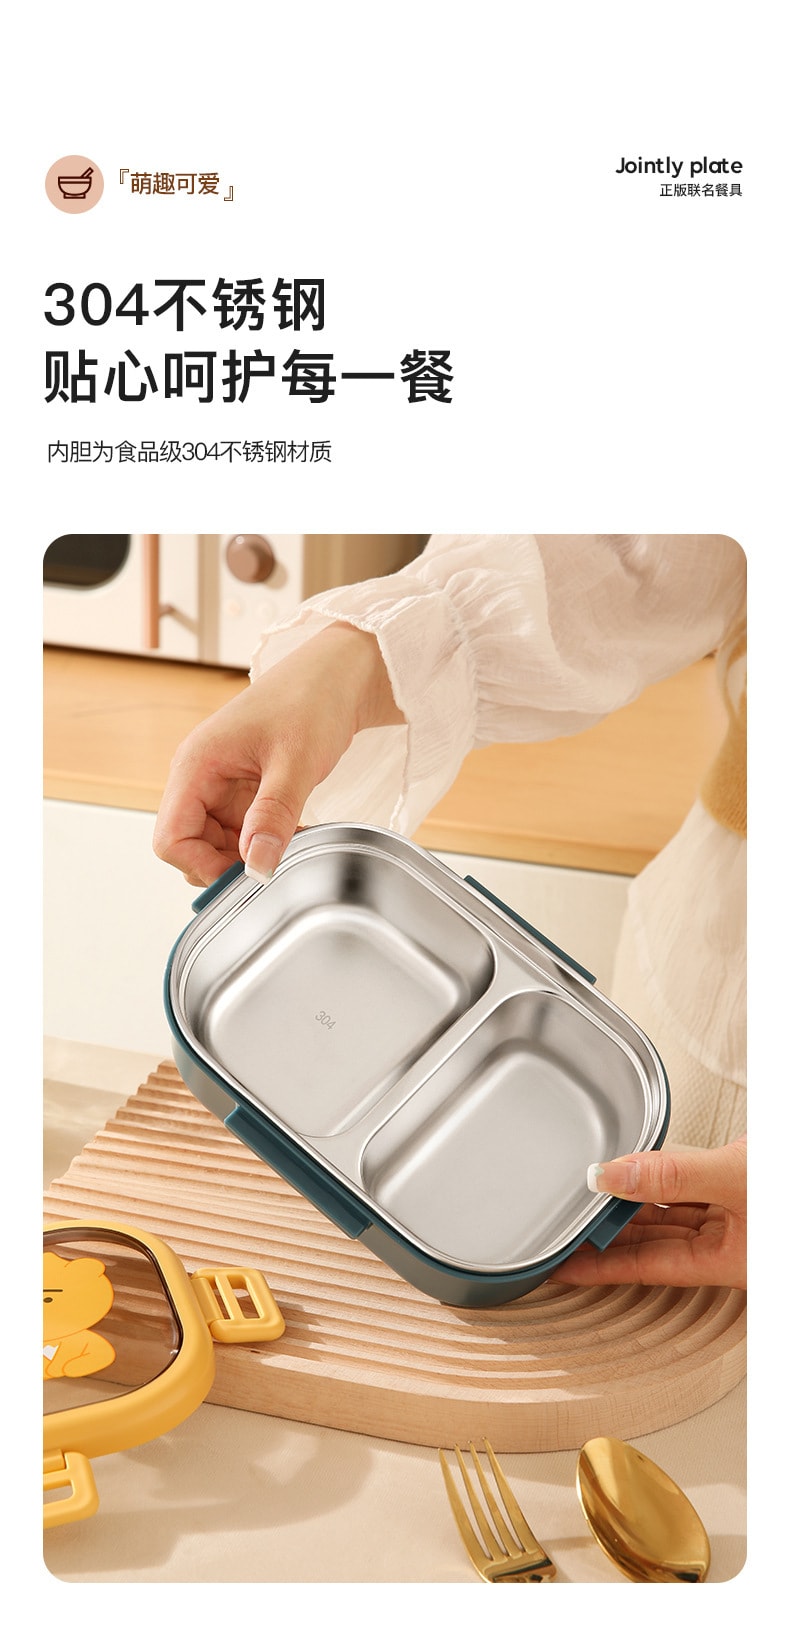 【中国直邮】 LINE FRIENDS  卡通韩式风格保温饭盒304不锈钢分格便当盒食品级上班族便携餐盒  APEACH款